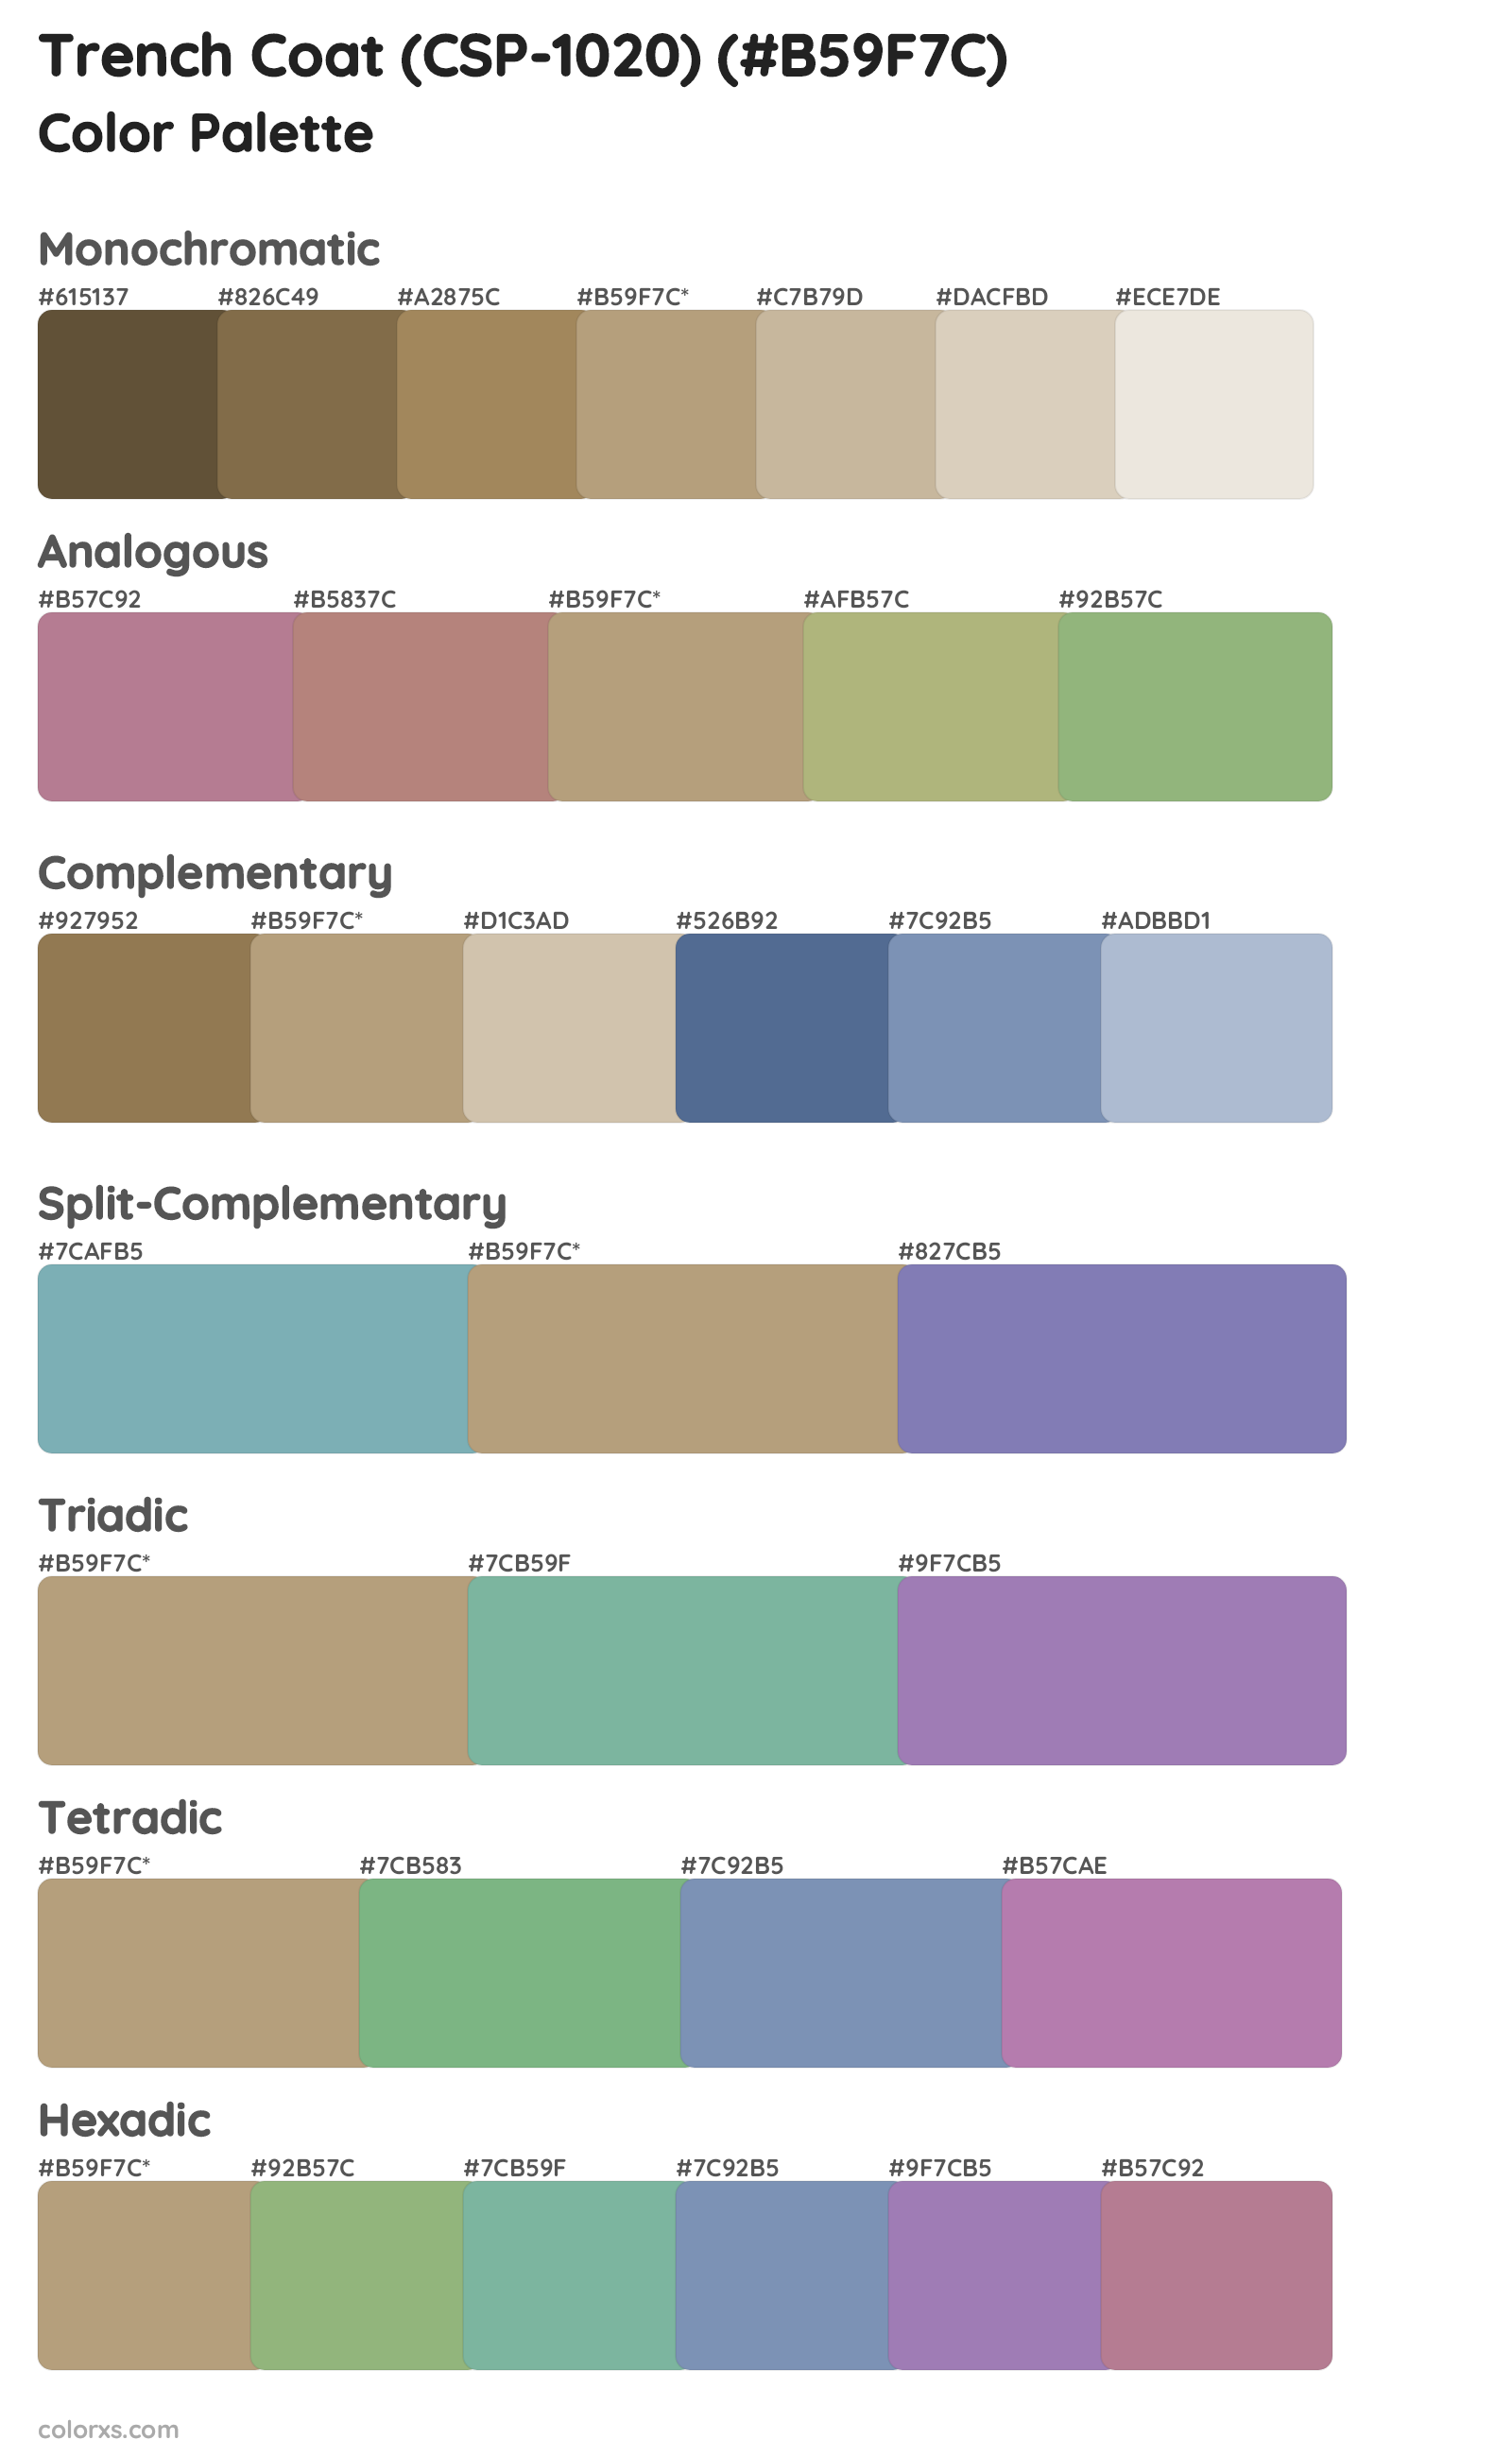 Trench Coat (CSP-1020) Color Scheme Palettes